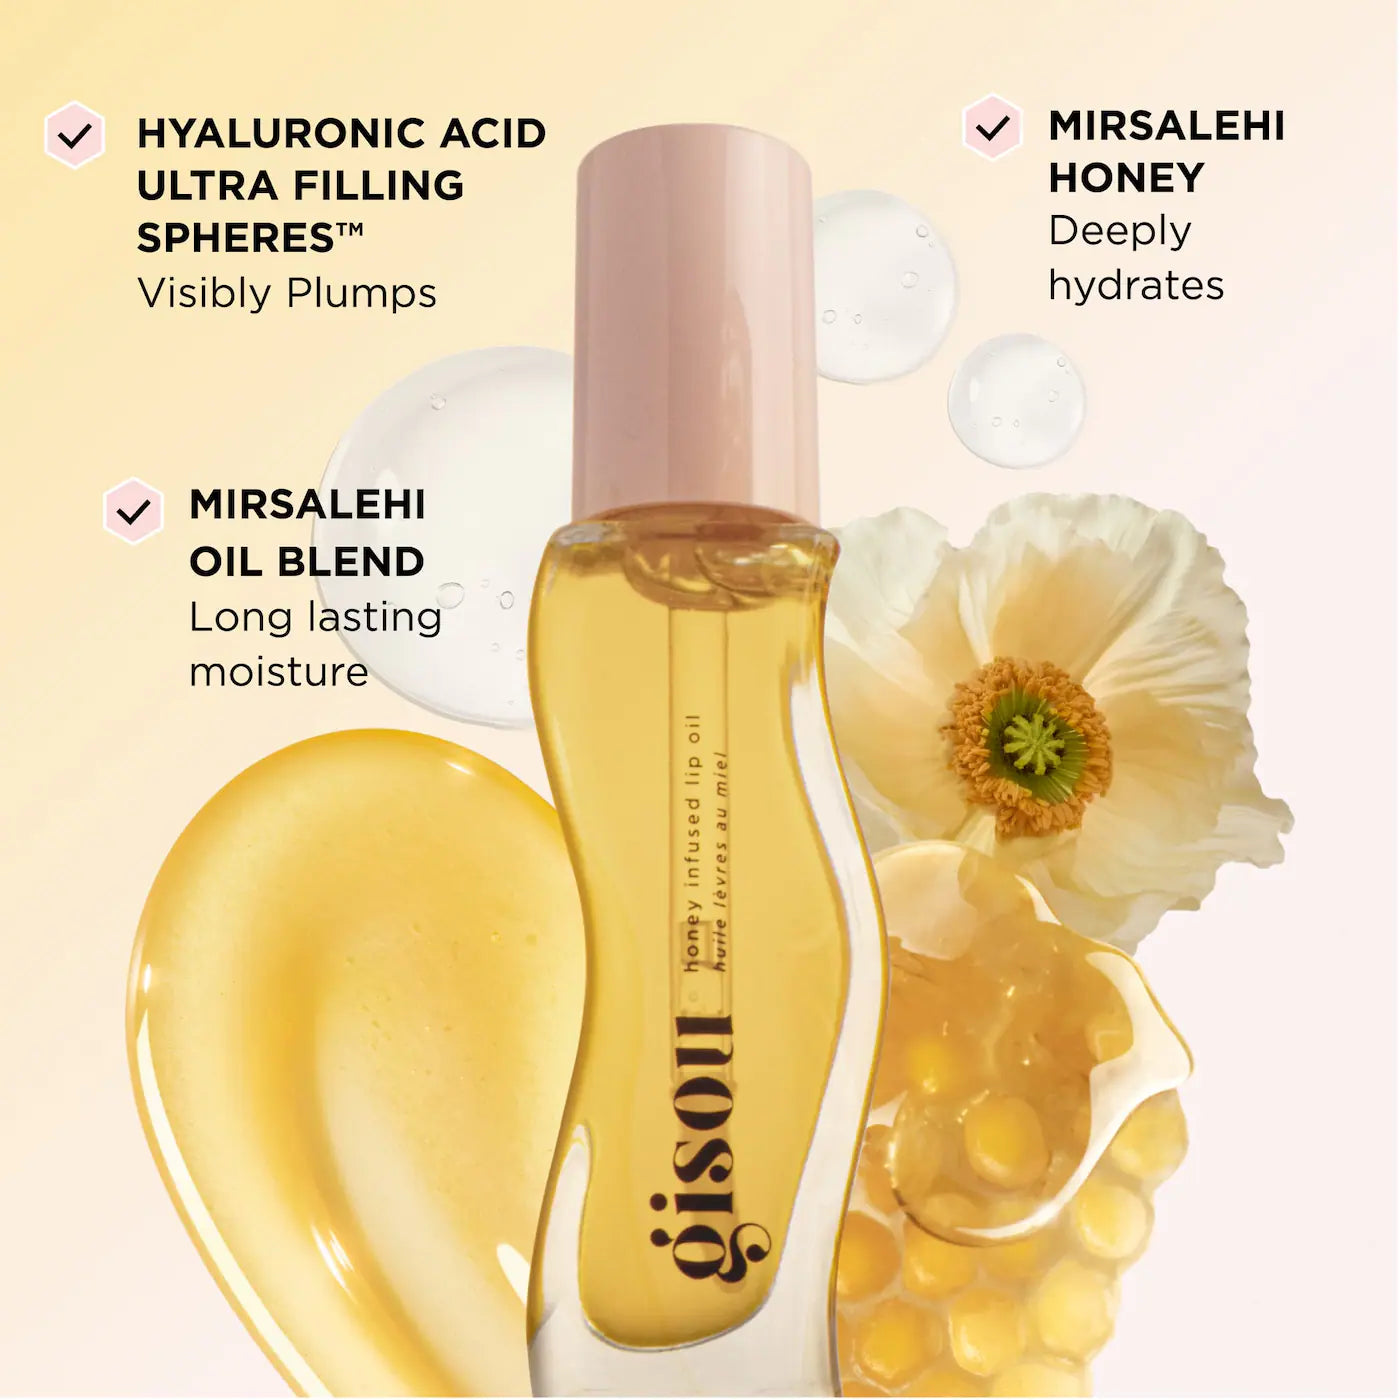 Gisou - Honey Infused Lip Oil | 8 mL